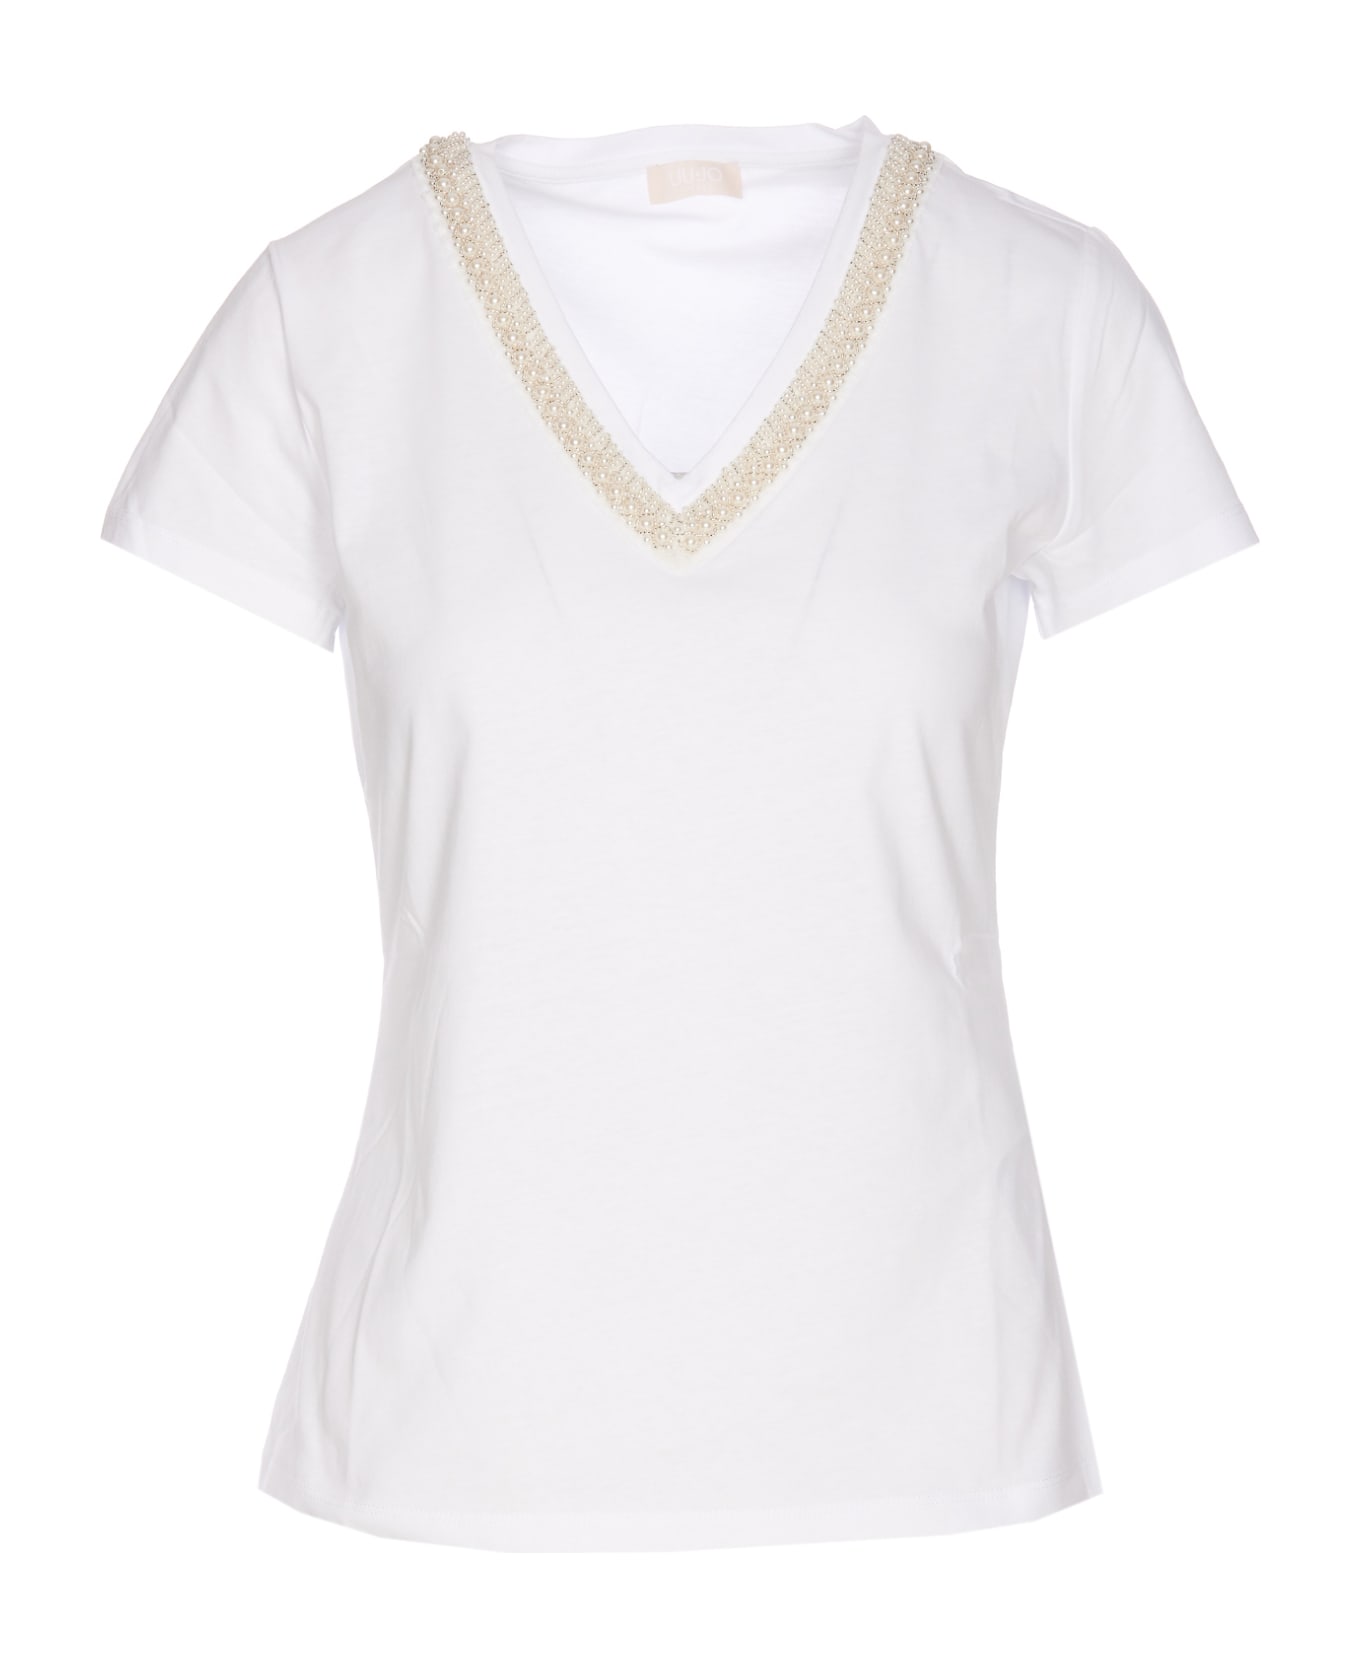 Liu-Jo Moda T-shirt - White Tシャツ